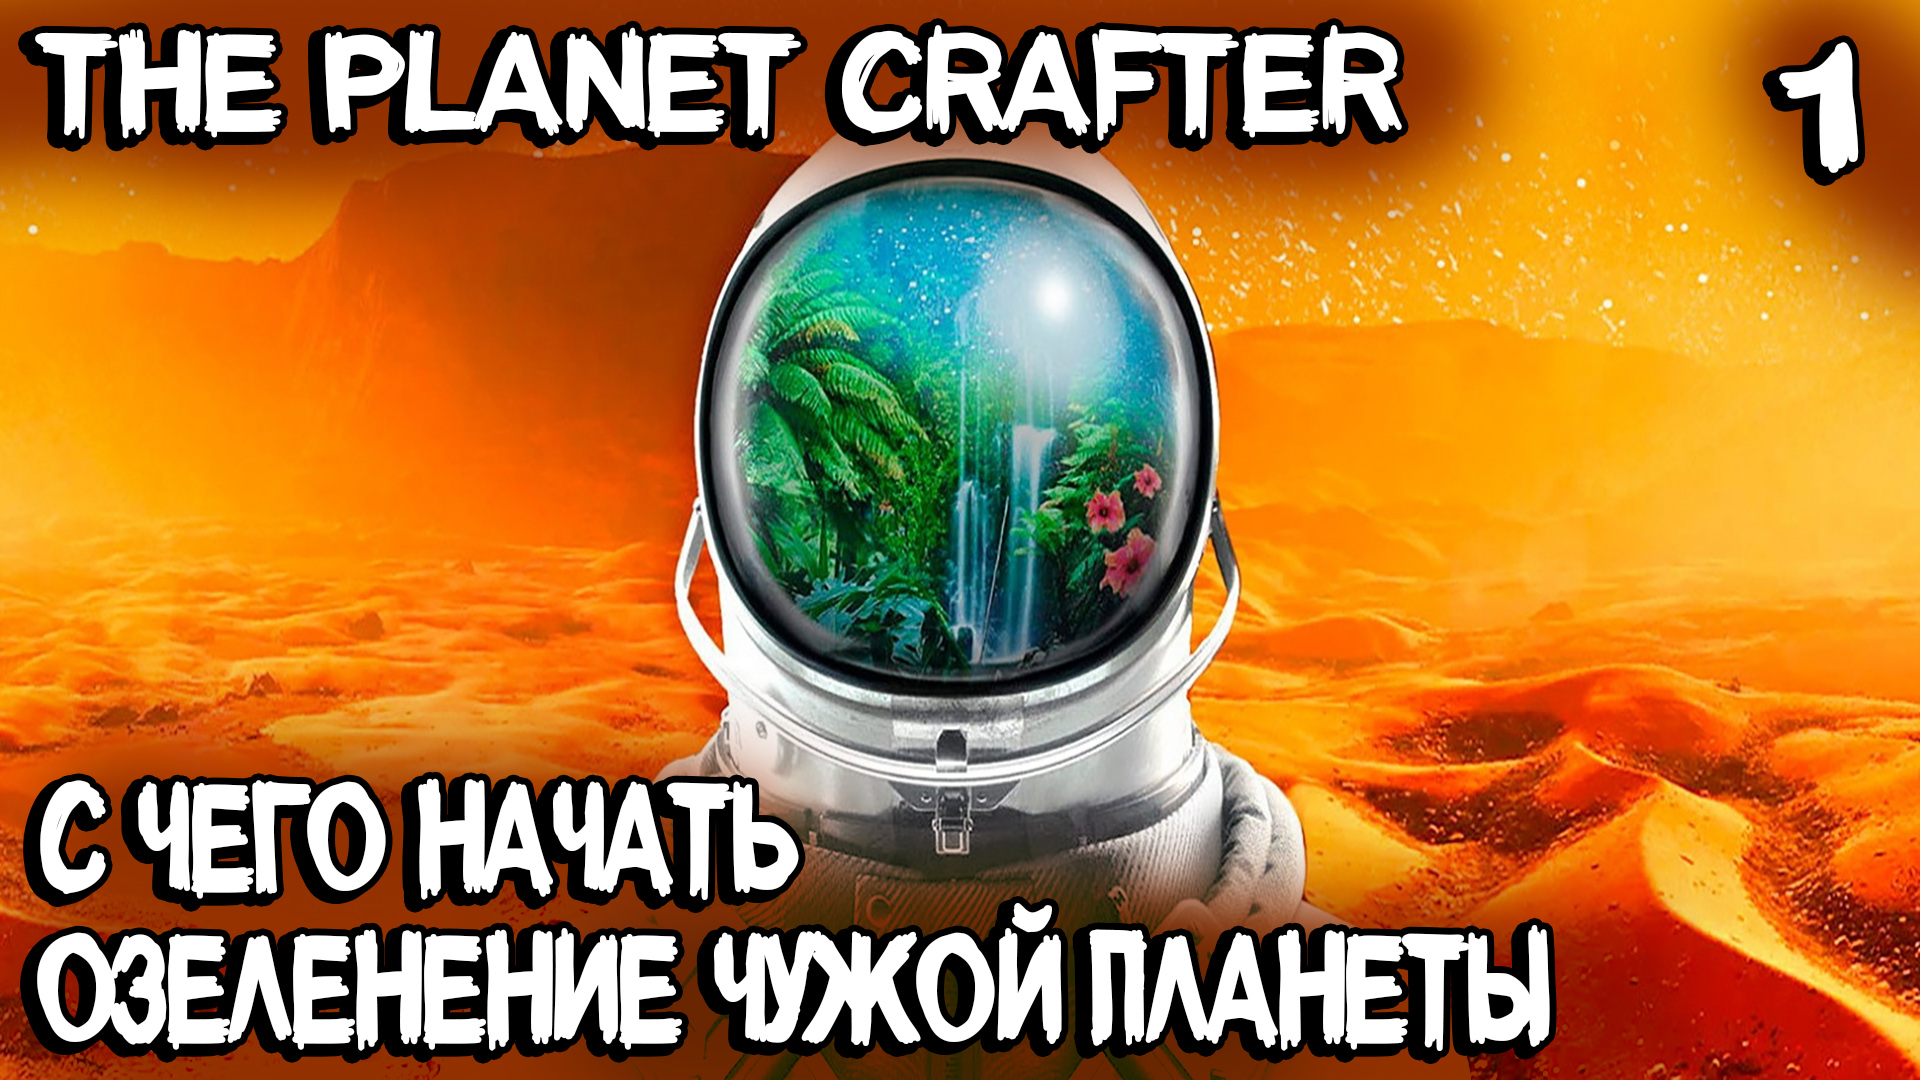 The Planet Crafter - обзор и прохождение новой инди выживалки про терраформирование чужой планеты #1